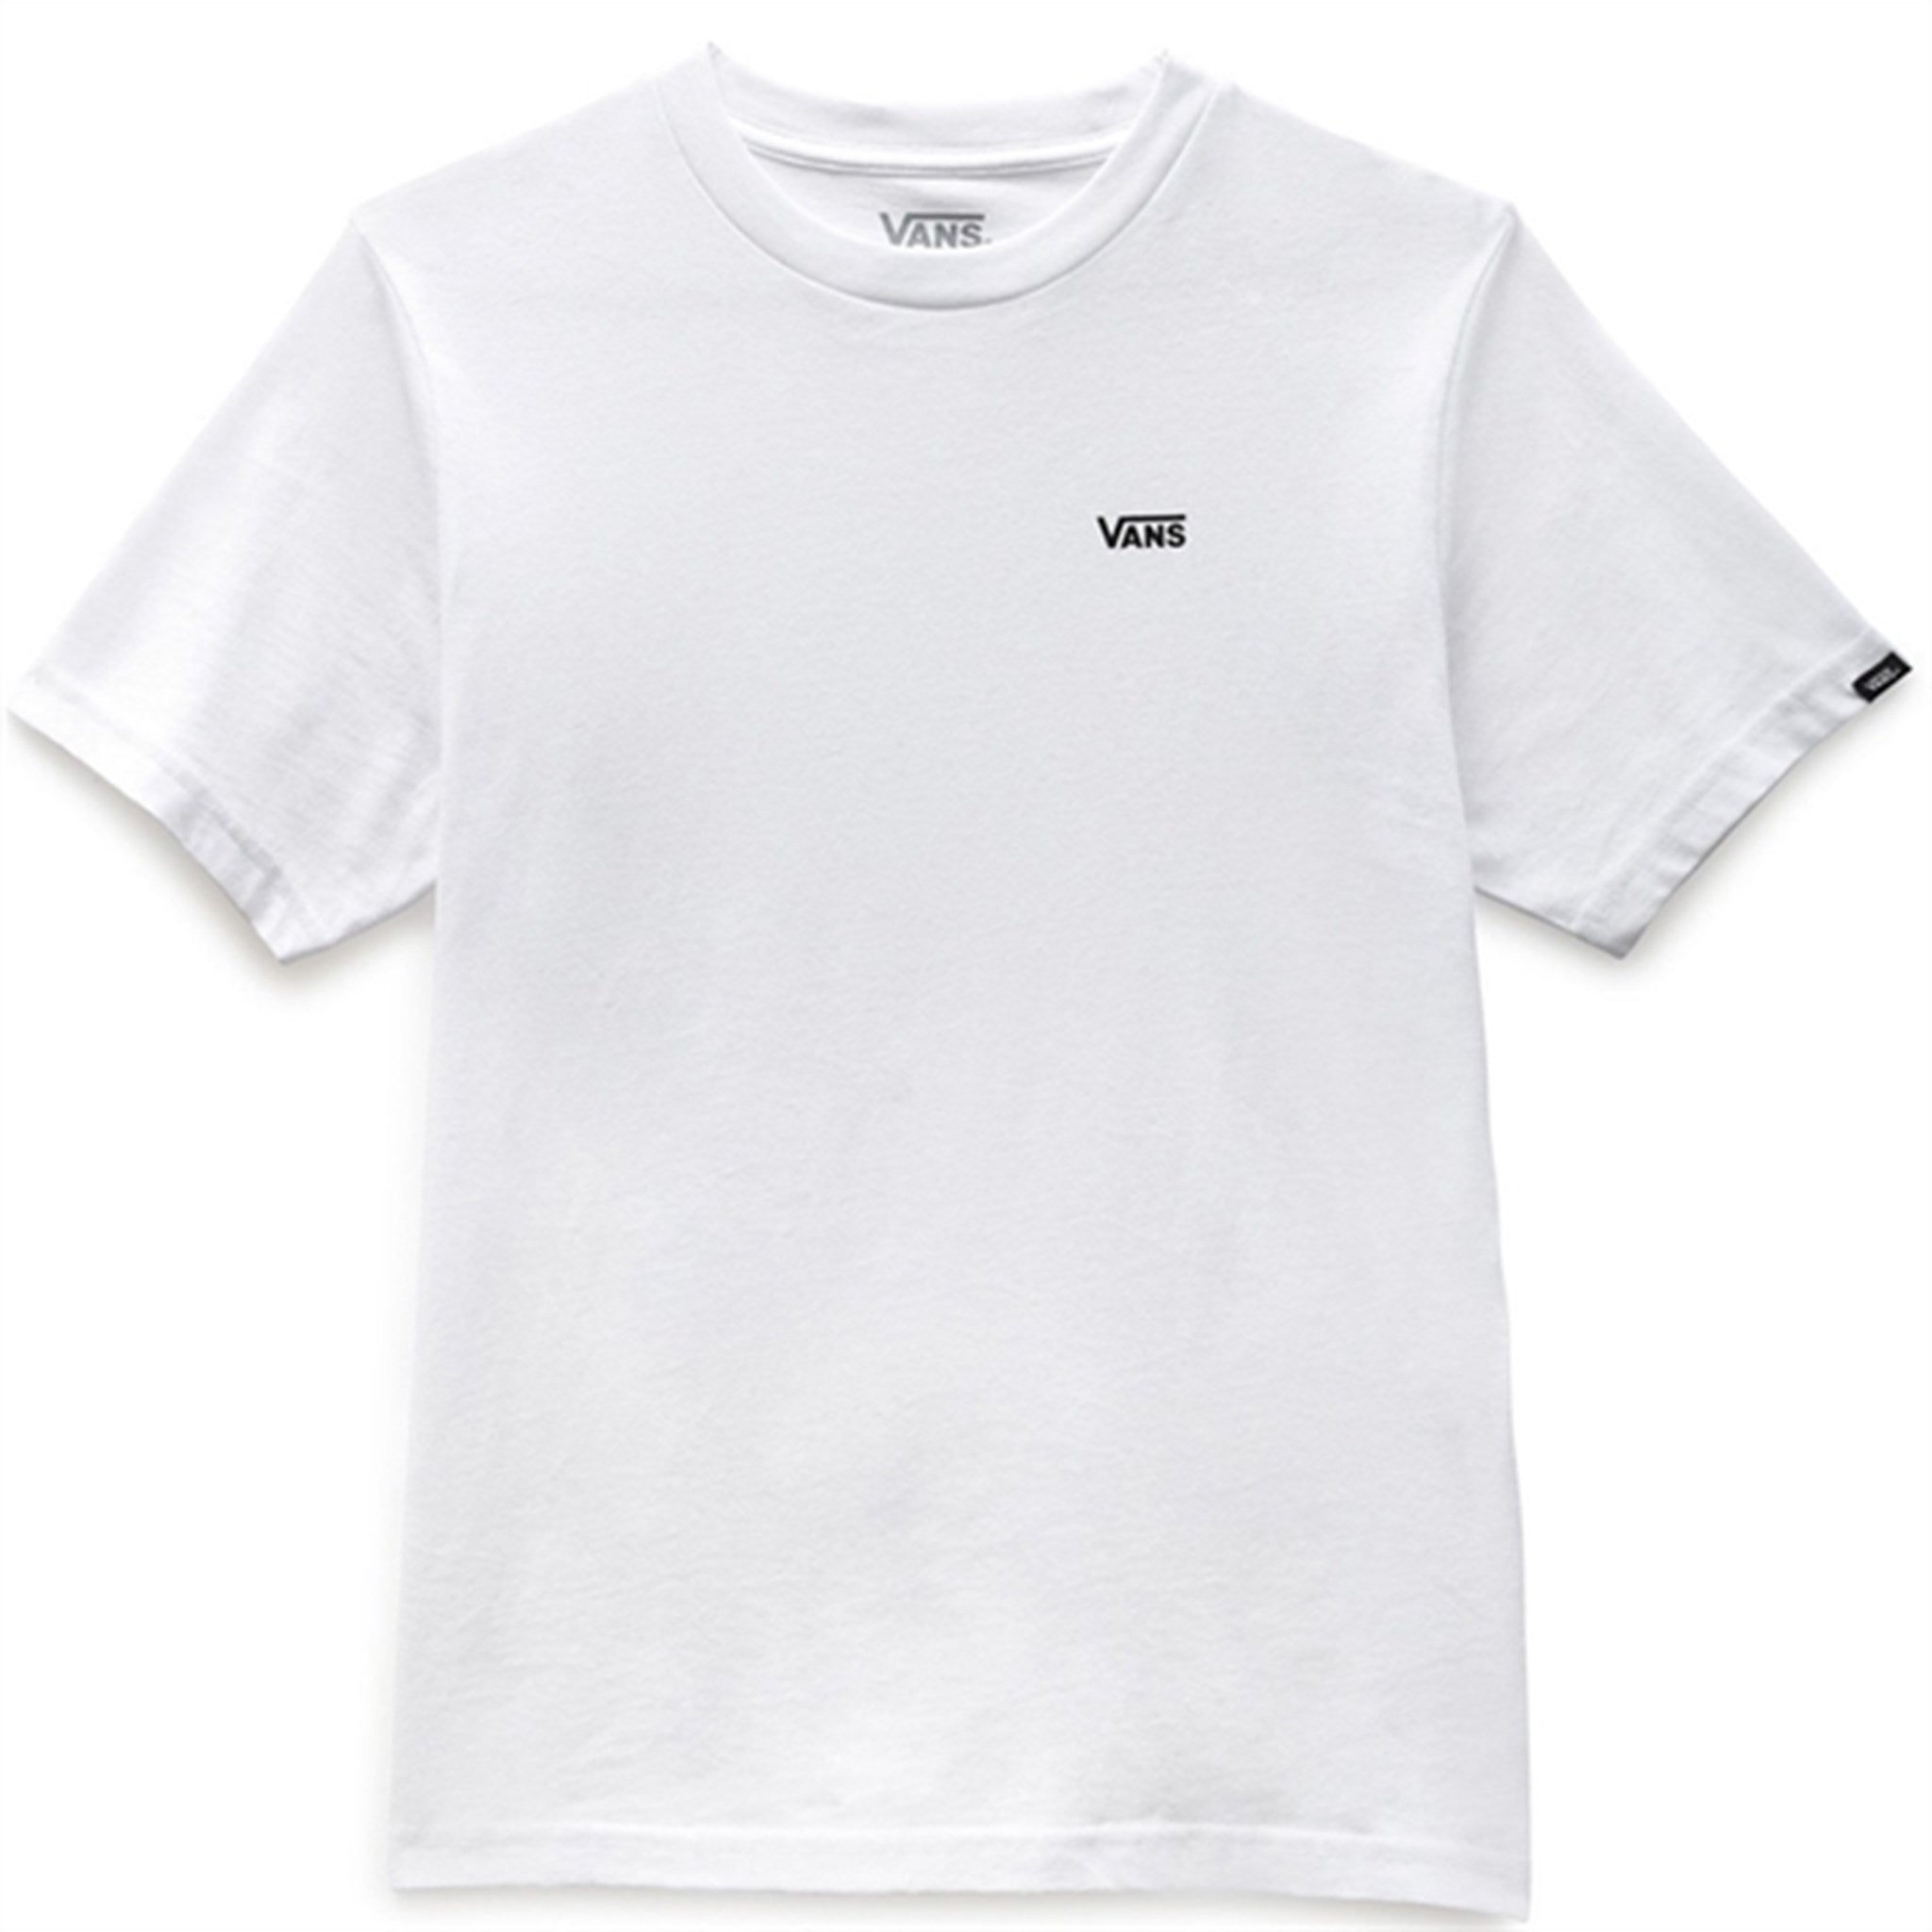 VANS Left Chest T-shirt White